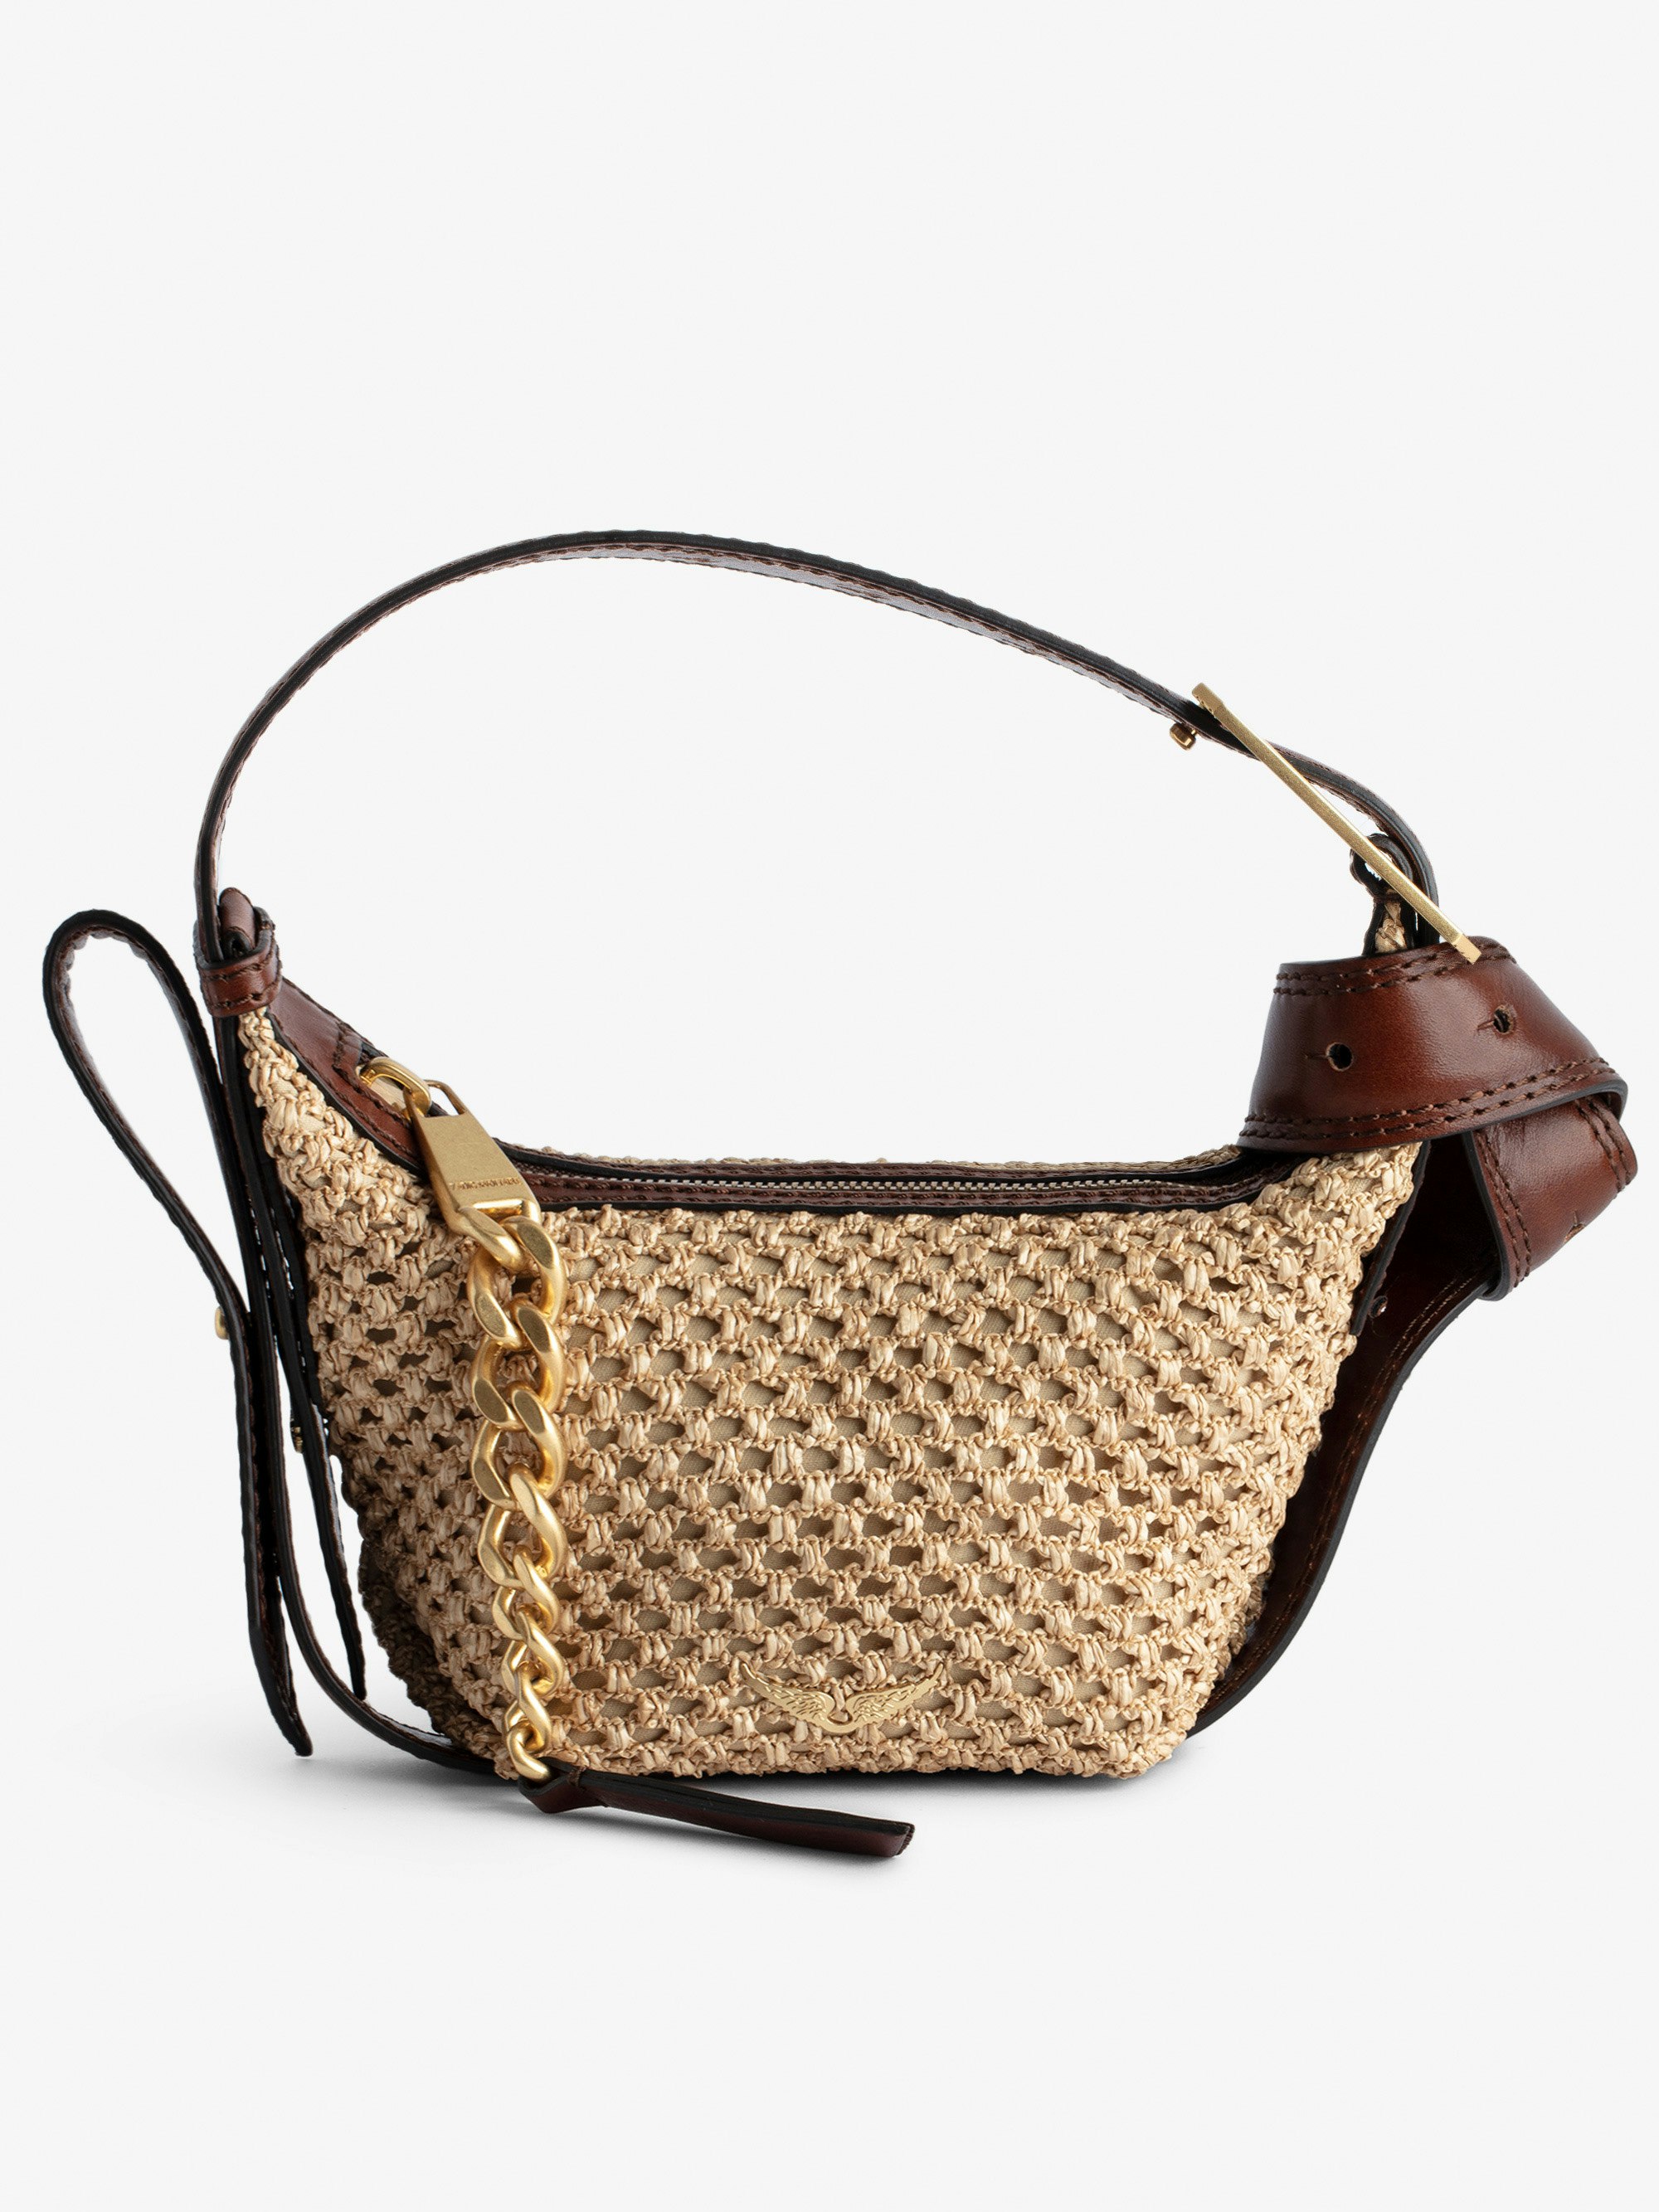 Borsa Le Cecilia XS - Piccola borsa effetto cestino beige con tracolla in pelle e fibbia metallica a C.